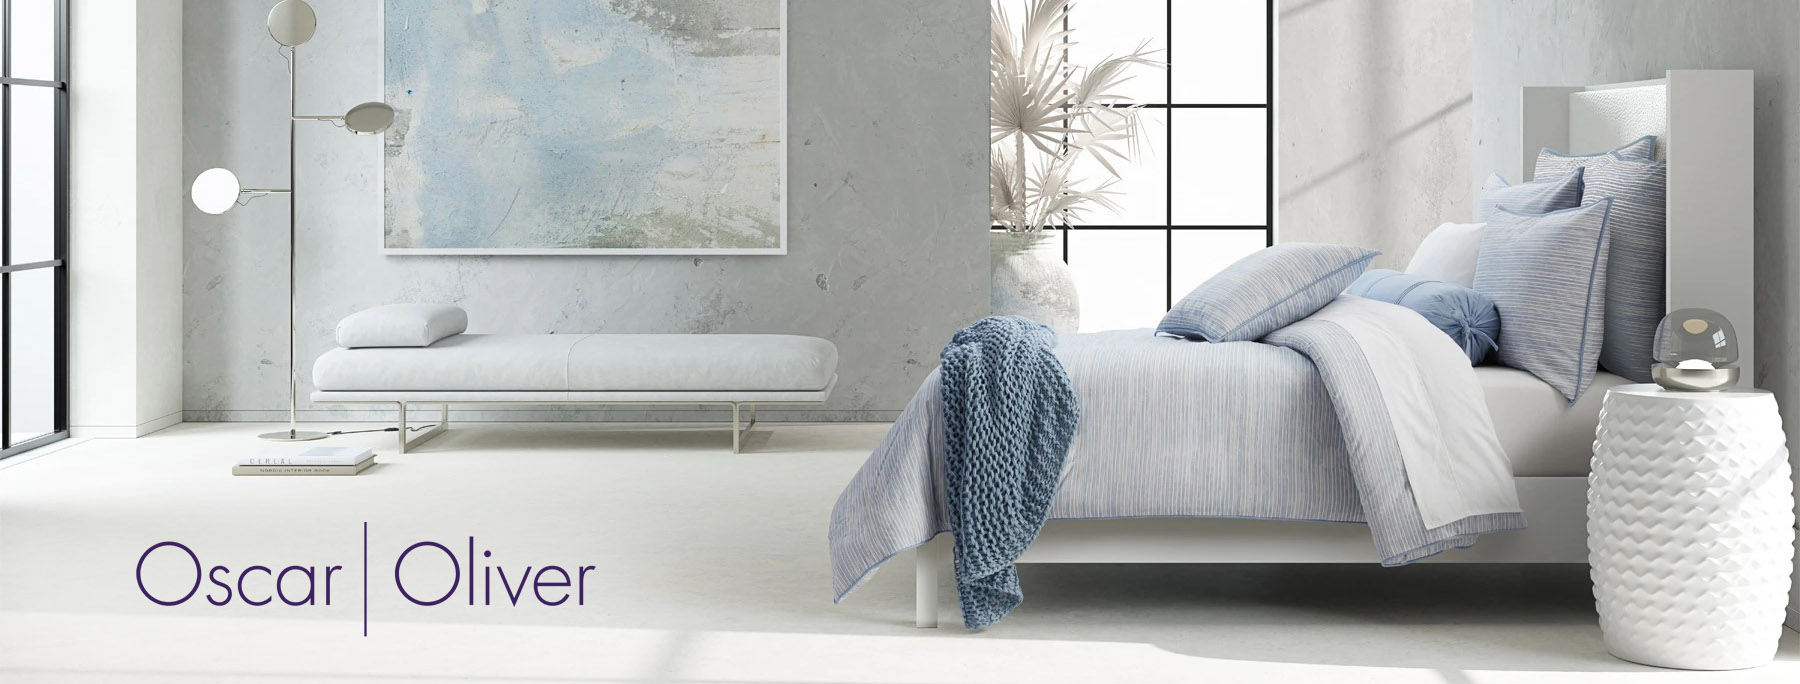 Oscar Oliver Comforter Sets Bedding